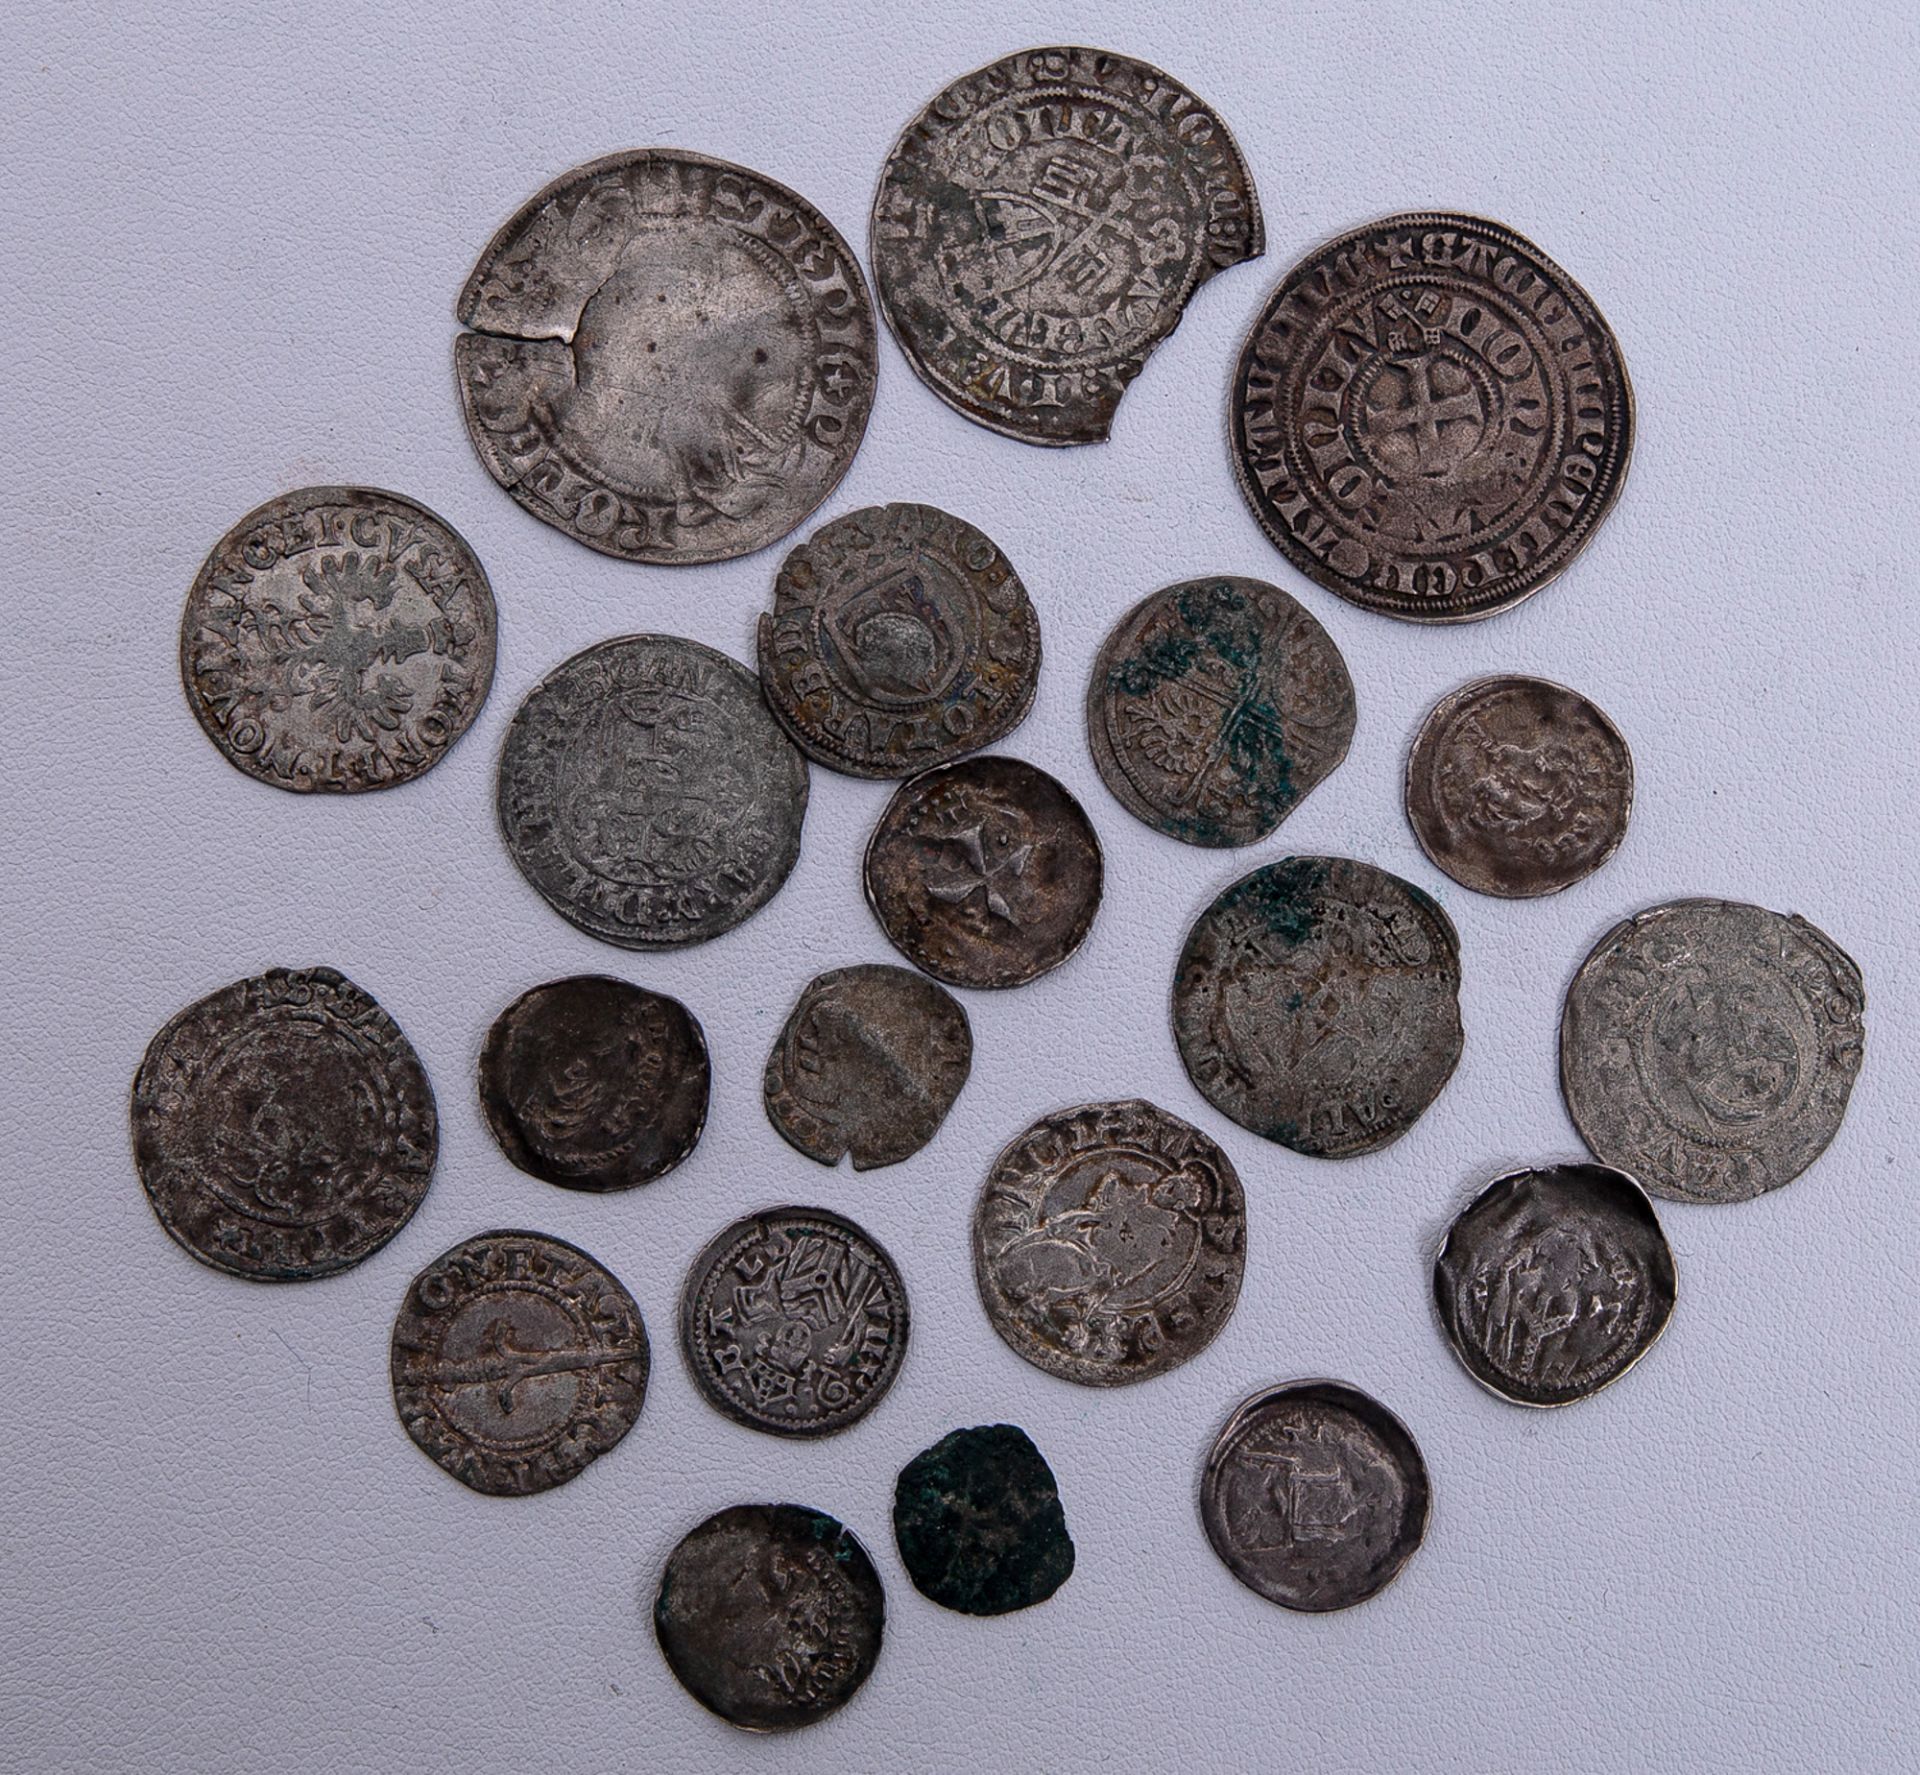 21 lothringische Silber- und Kleinmünzen, ca. 14.-18. Jh. - Image 2 of 2